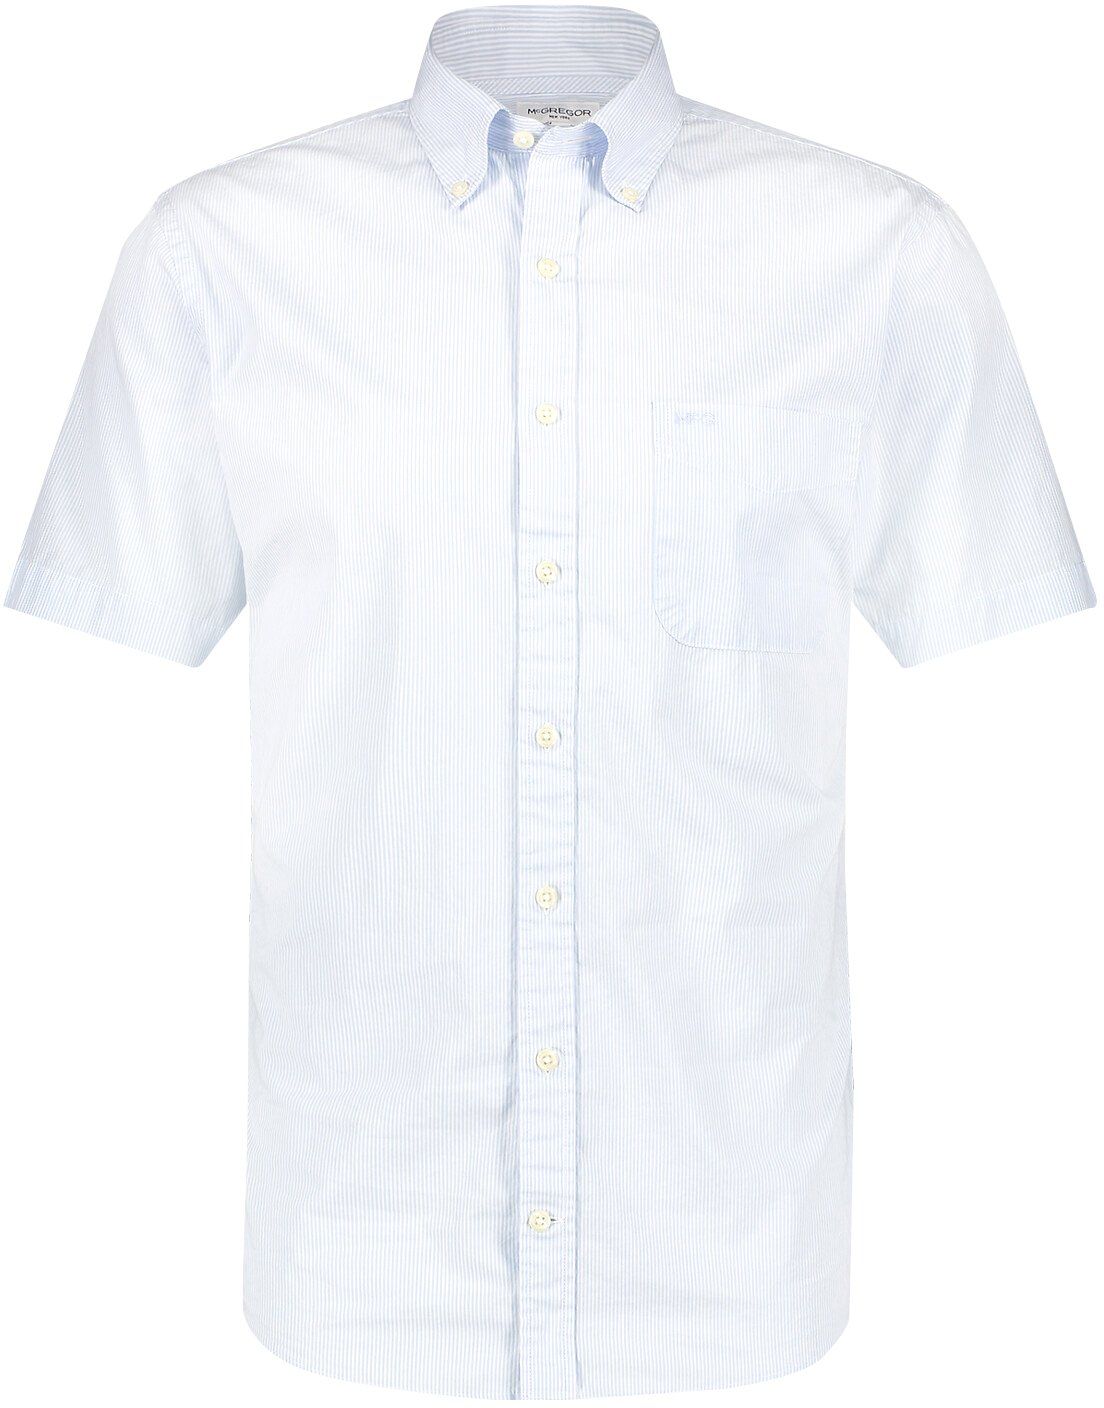 McGregor Shirt Short Sleeve Stripes Light Blue size L